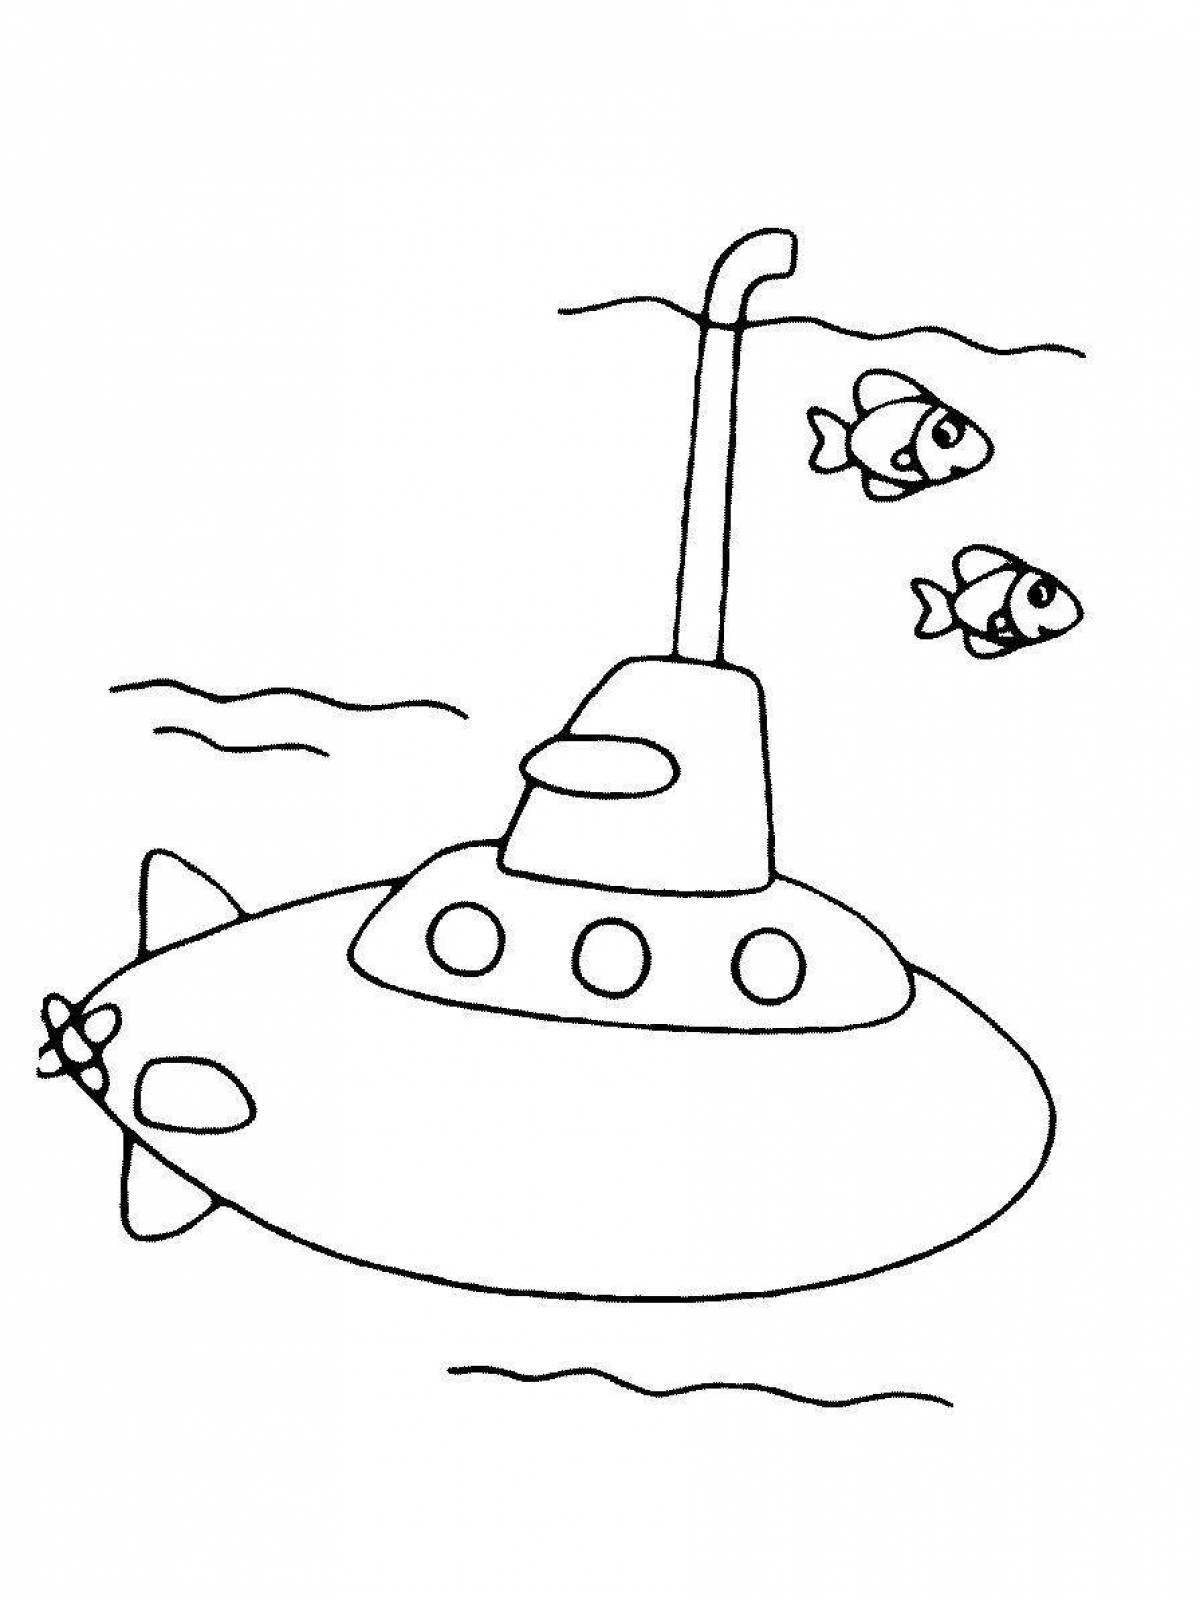 Children's submarine coloring book